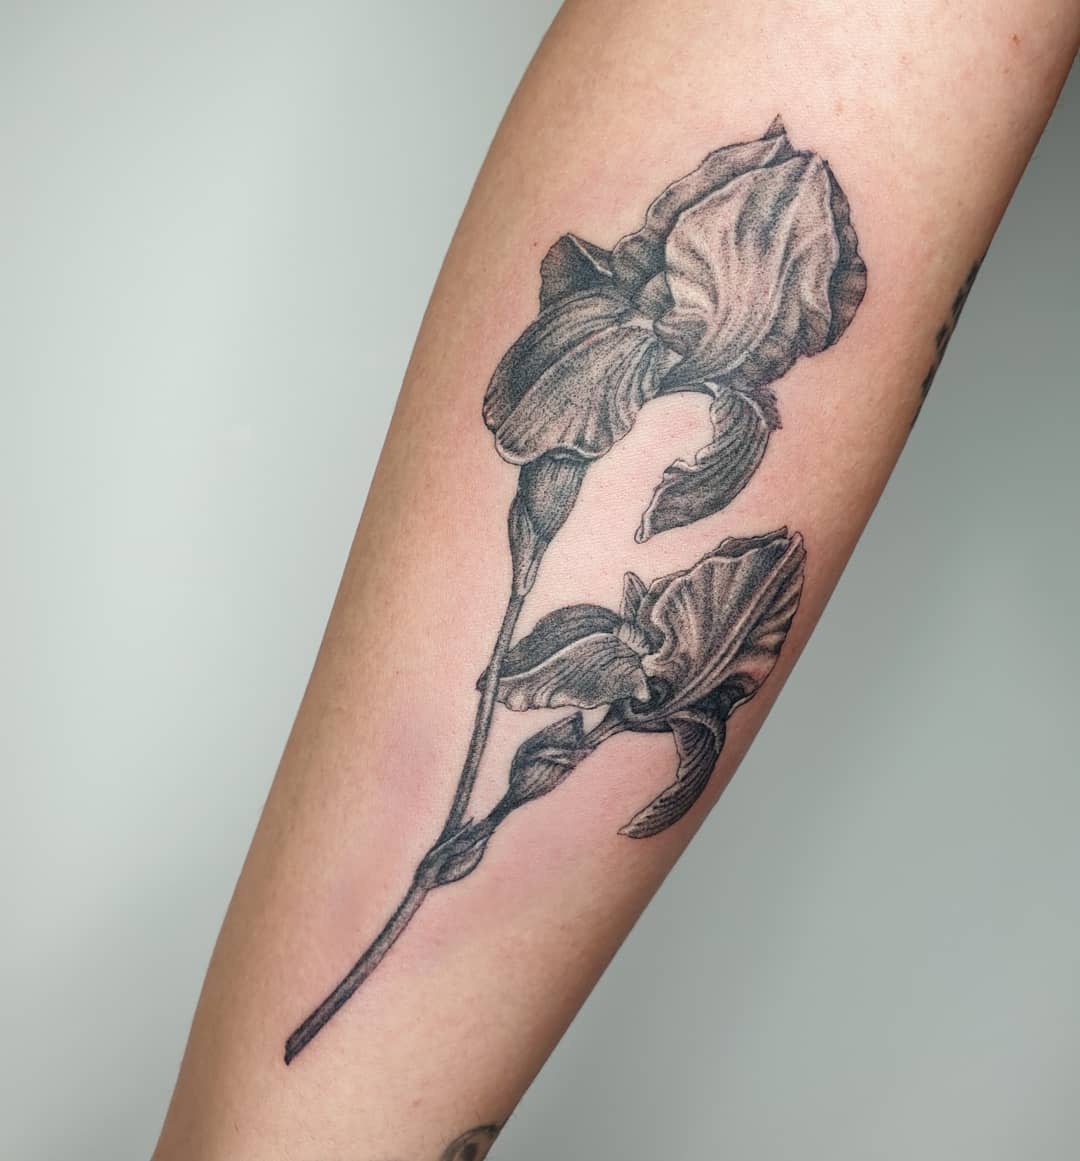 Iris Tattoo by NovaTrinity on DeviantArt